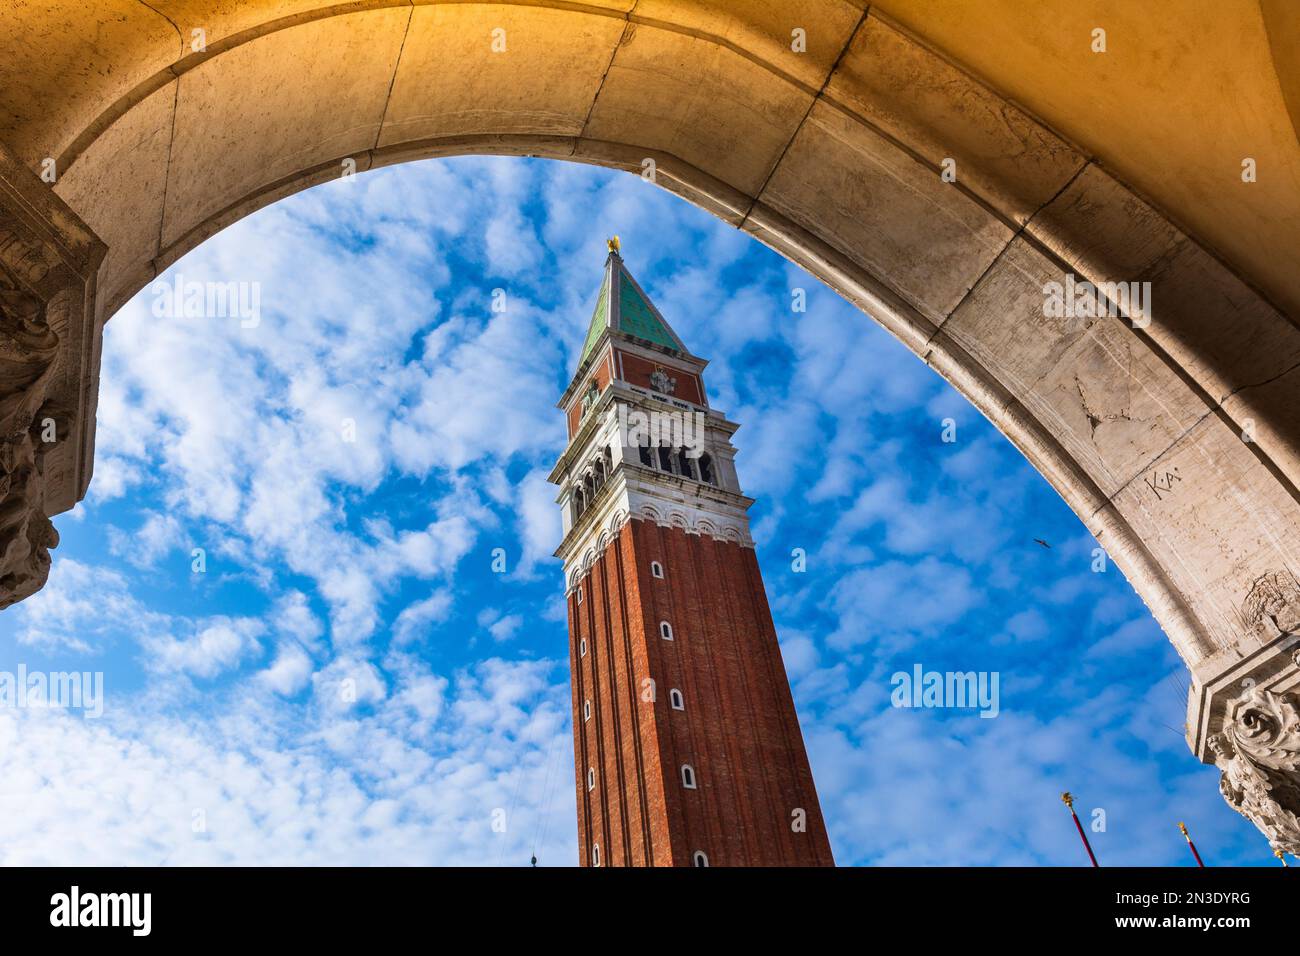 Vista del Campanile de San Marcos a través de un arco en Piazza San Marco en Veneto; Venecia, Italia Foto de stock